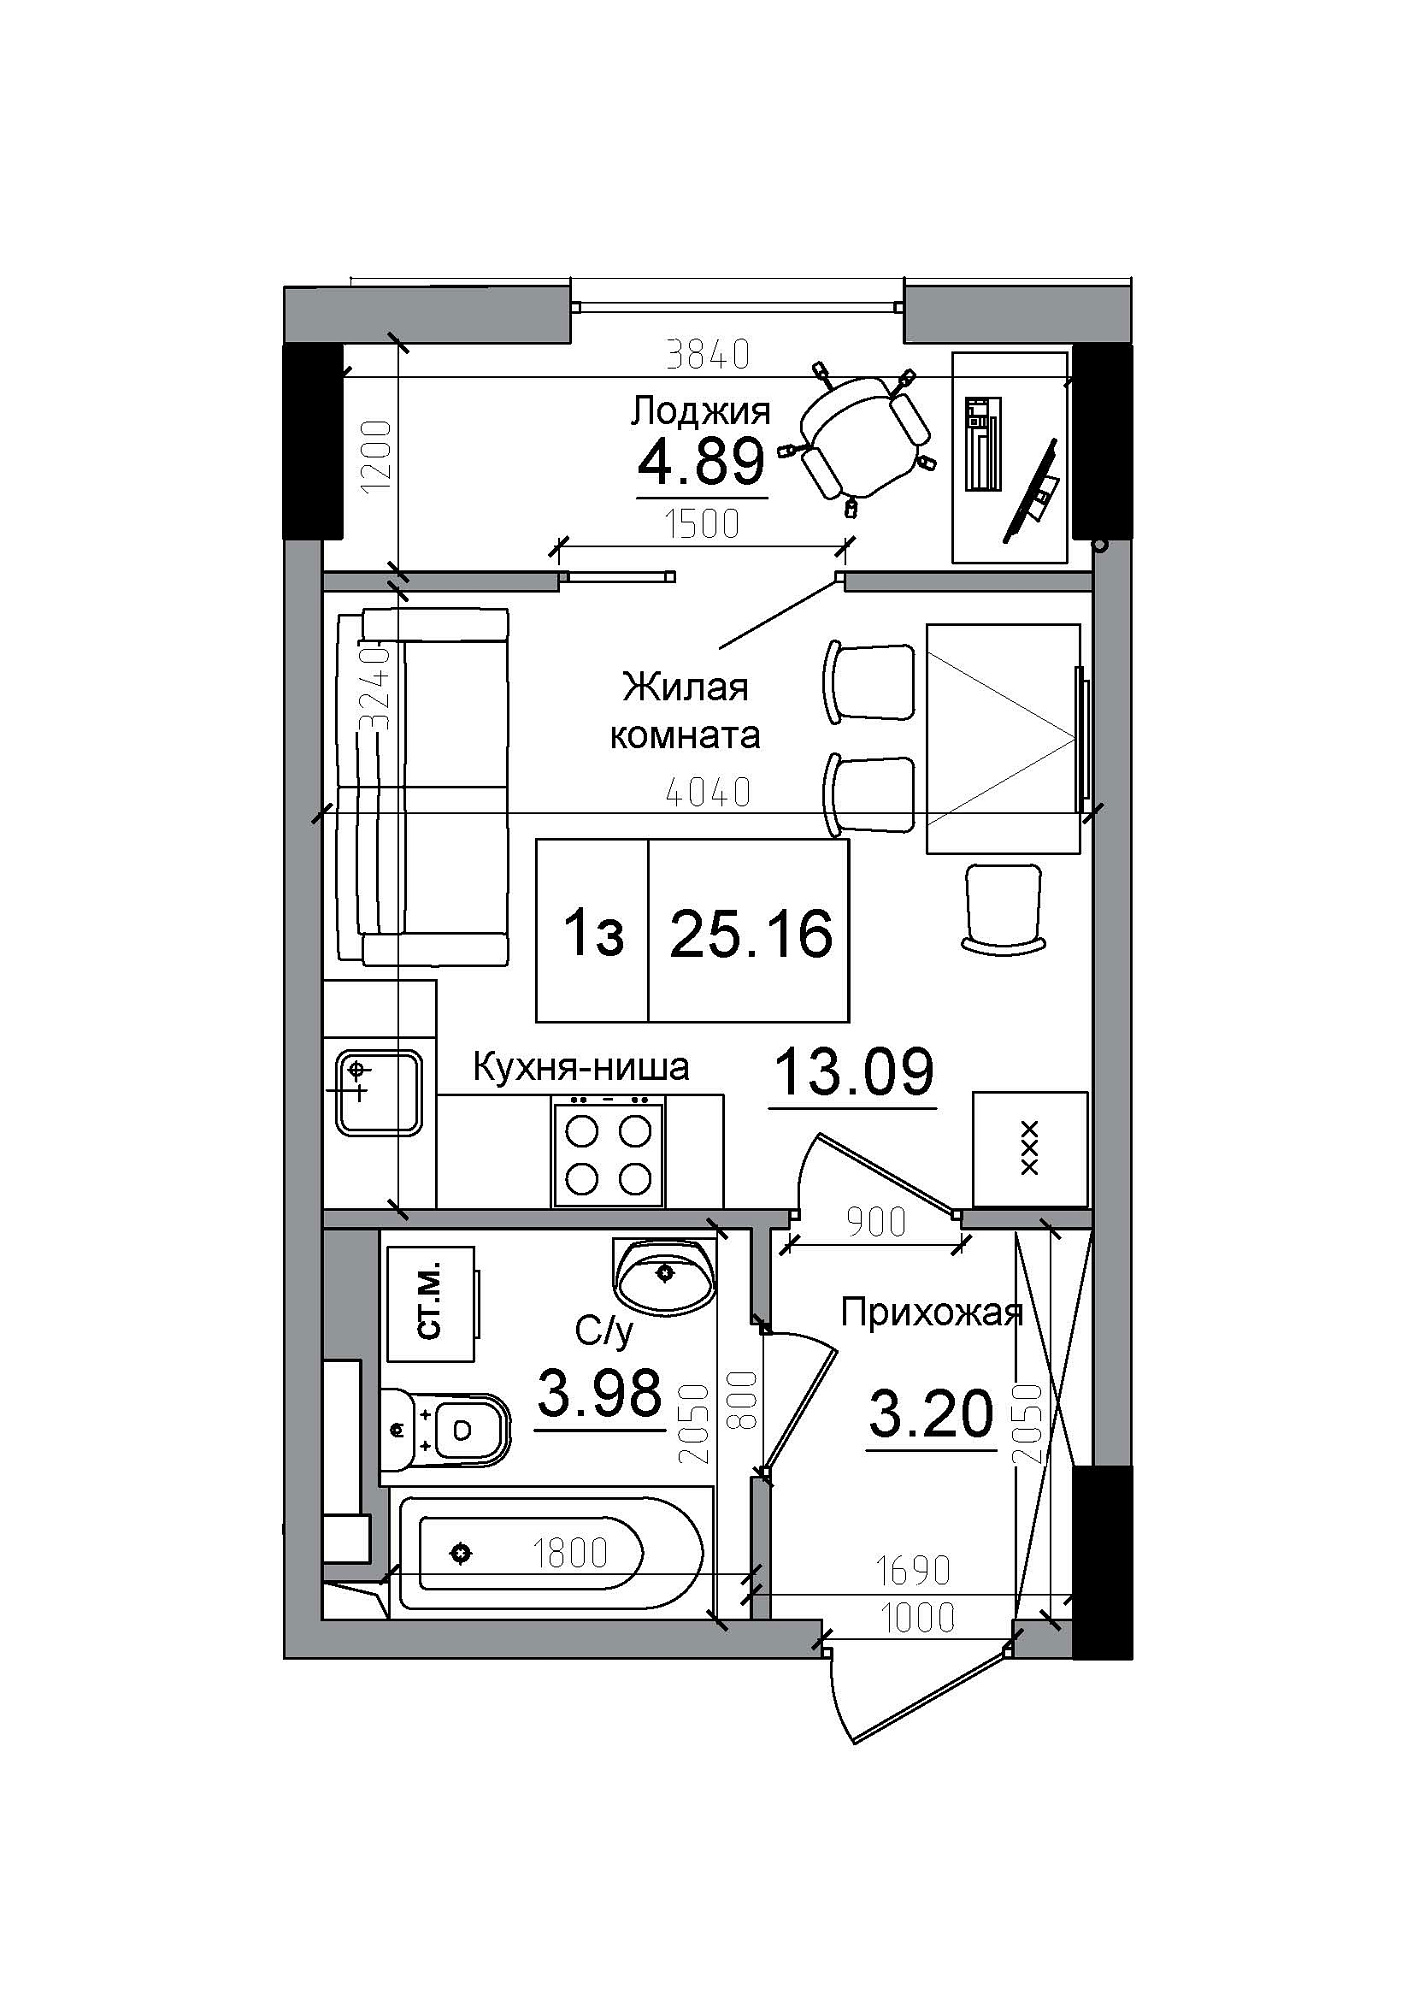 Планування Smart-квартира площею 25.16м2, AB-12-12/00009.